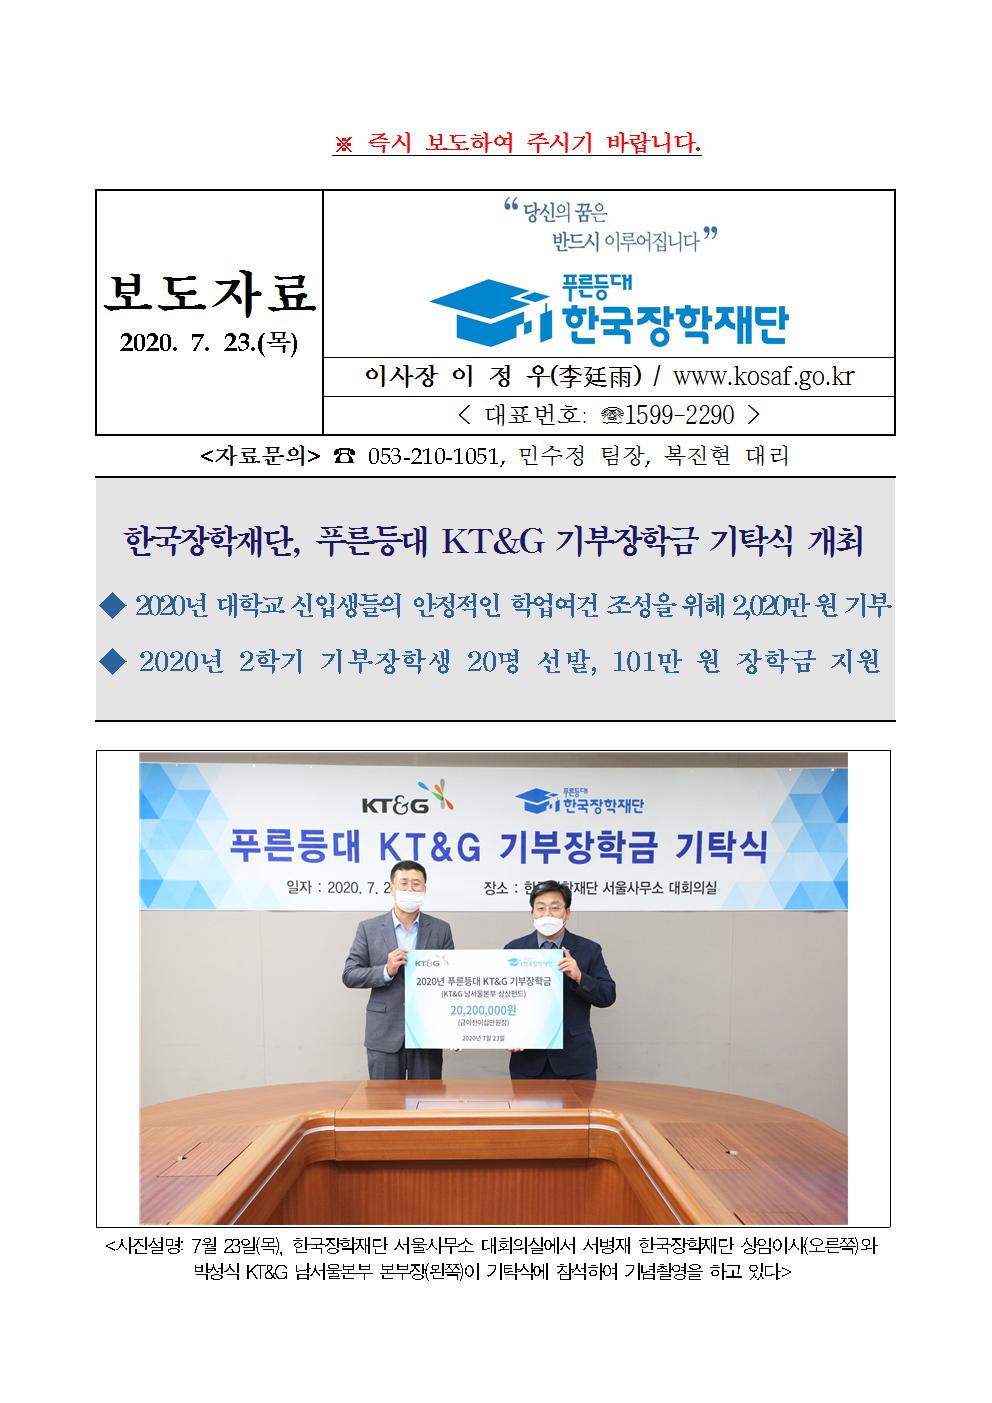 07-23(목)[보도자료] 한국장학재단 푸른등대 KT&G 기부장학금 기탁식 개최001.jpg